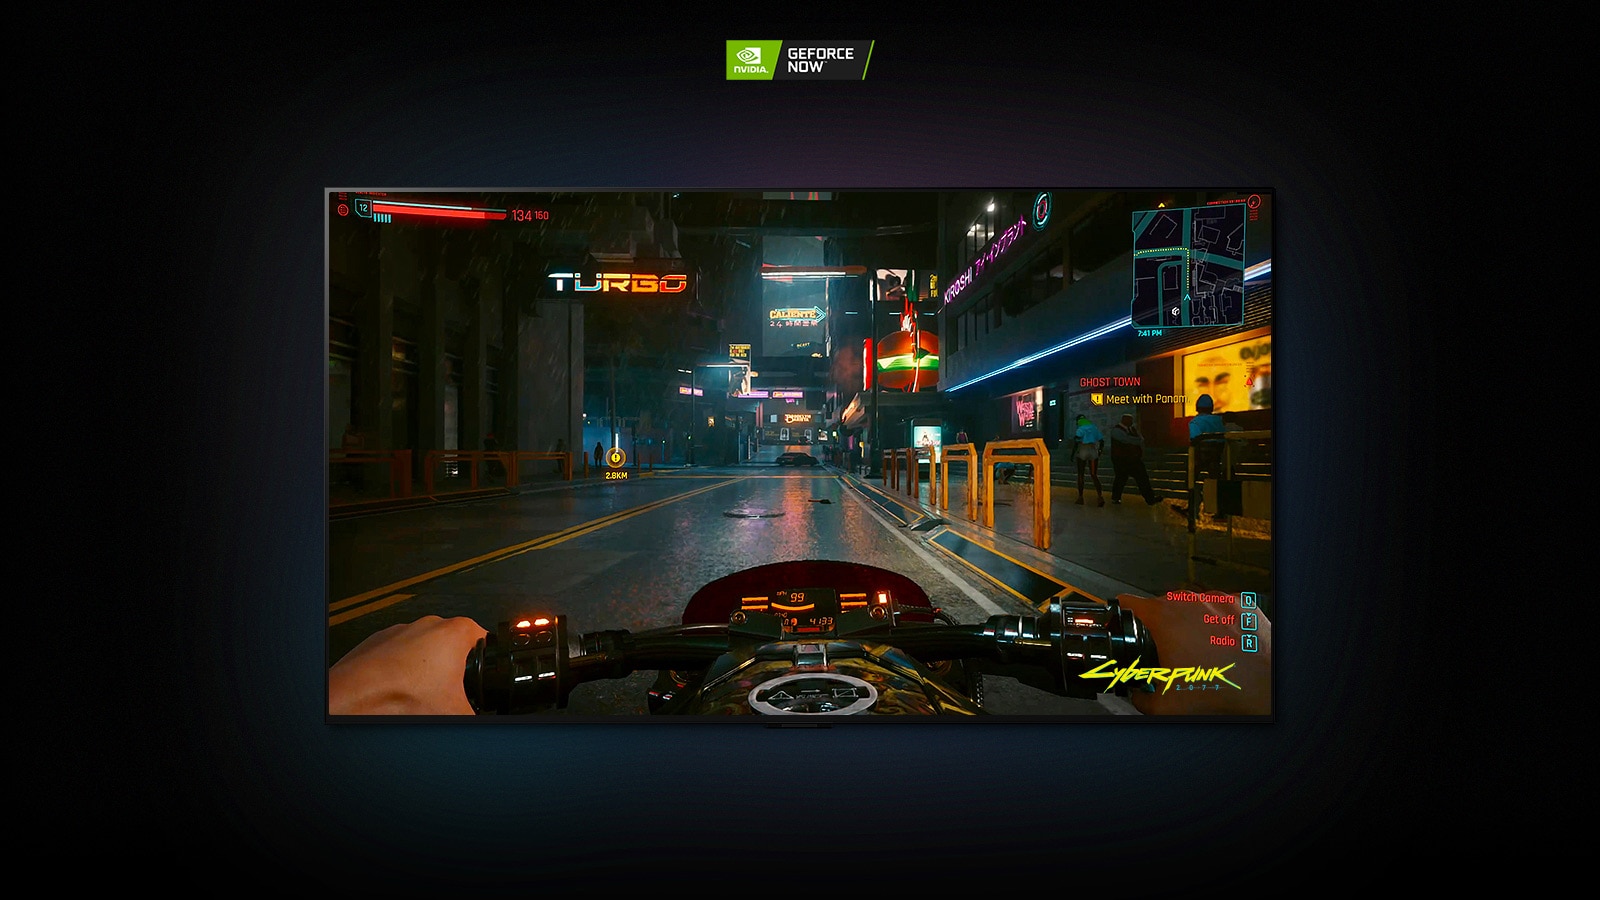 En una escena de Cyberpunk 2077 mostrada en una pantalla LG OLED, el jugador conduce por una calle iluminada con neón en una moto.